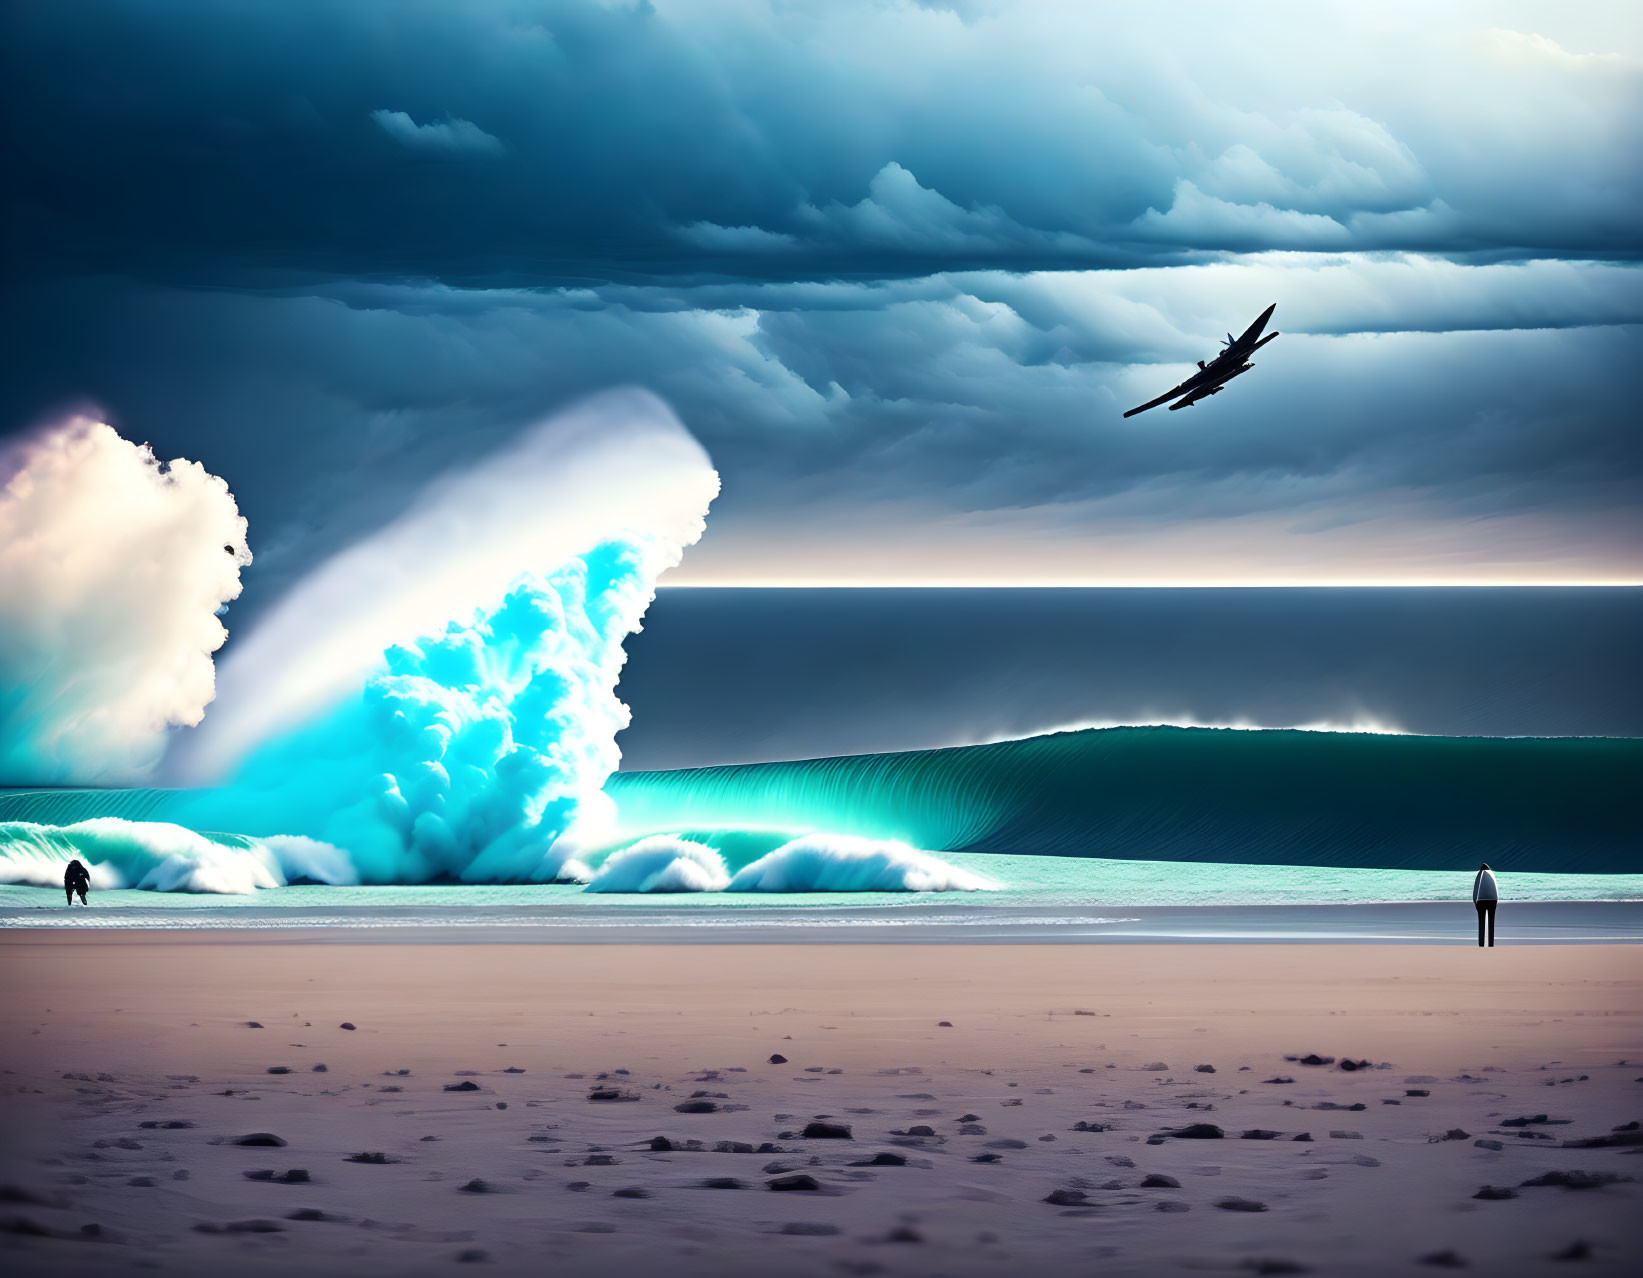 Surreal beach scene: glowing blue wave, stormy skies, airplane, figures